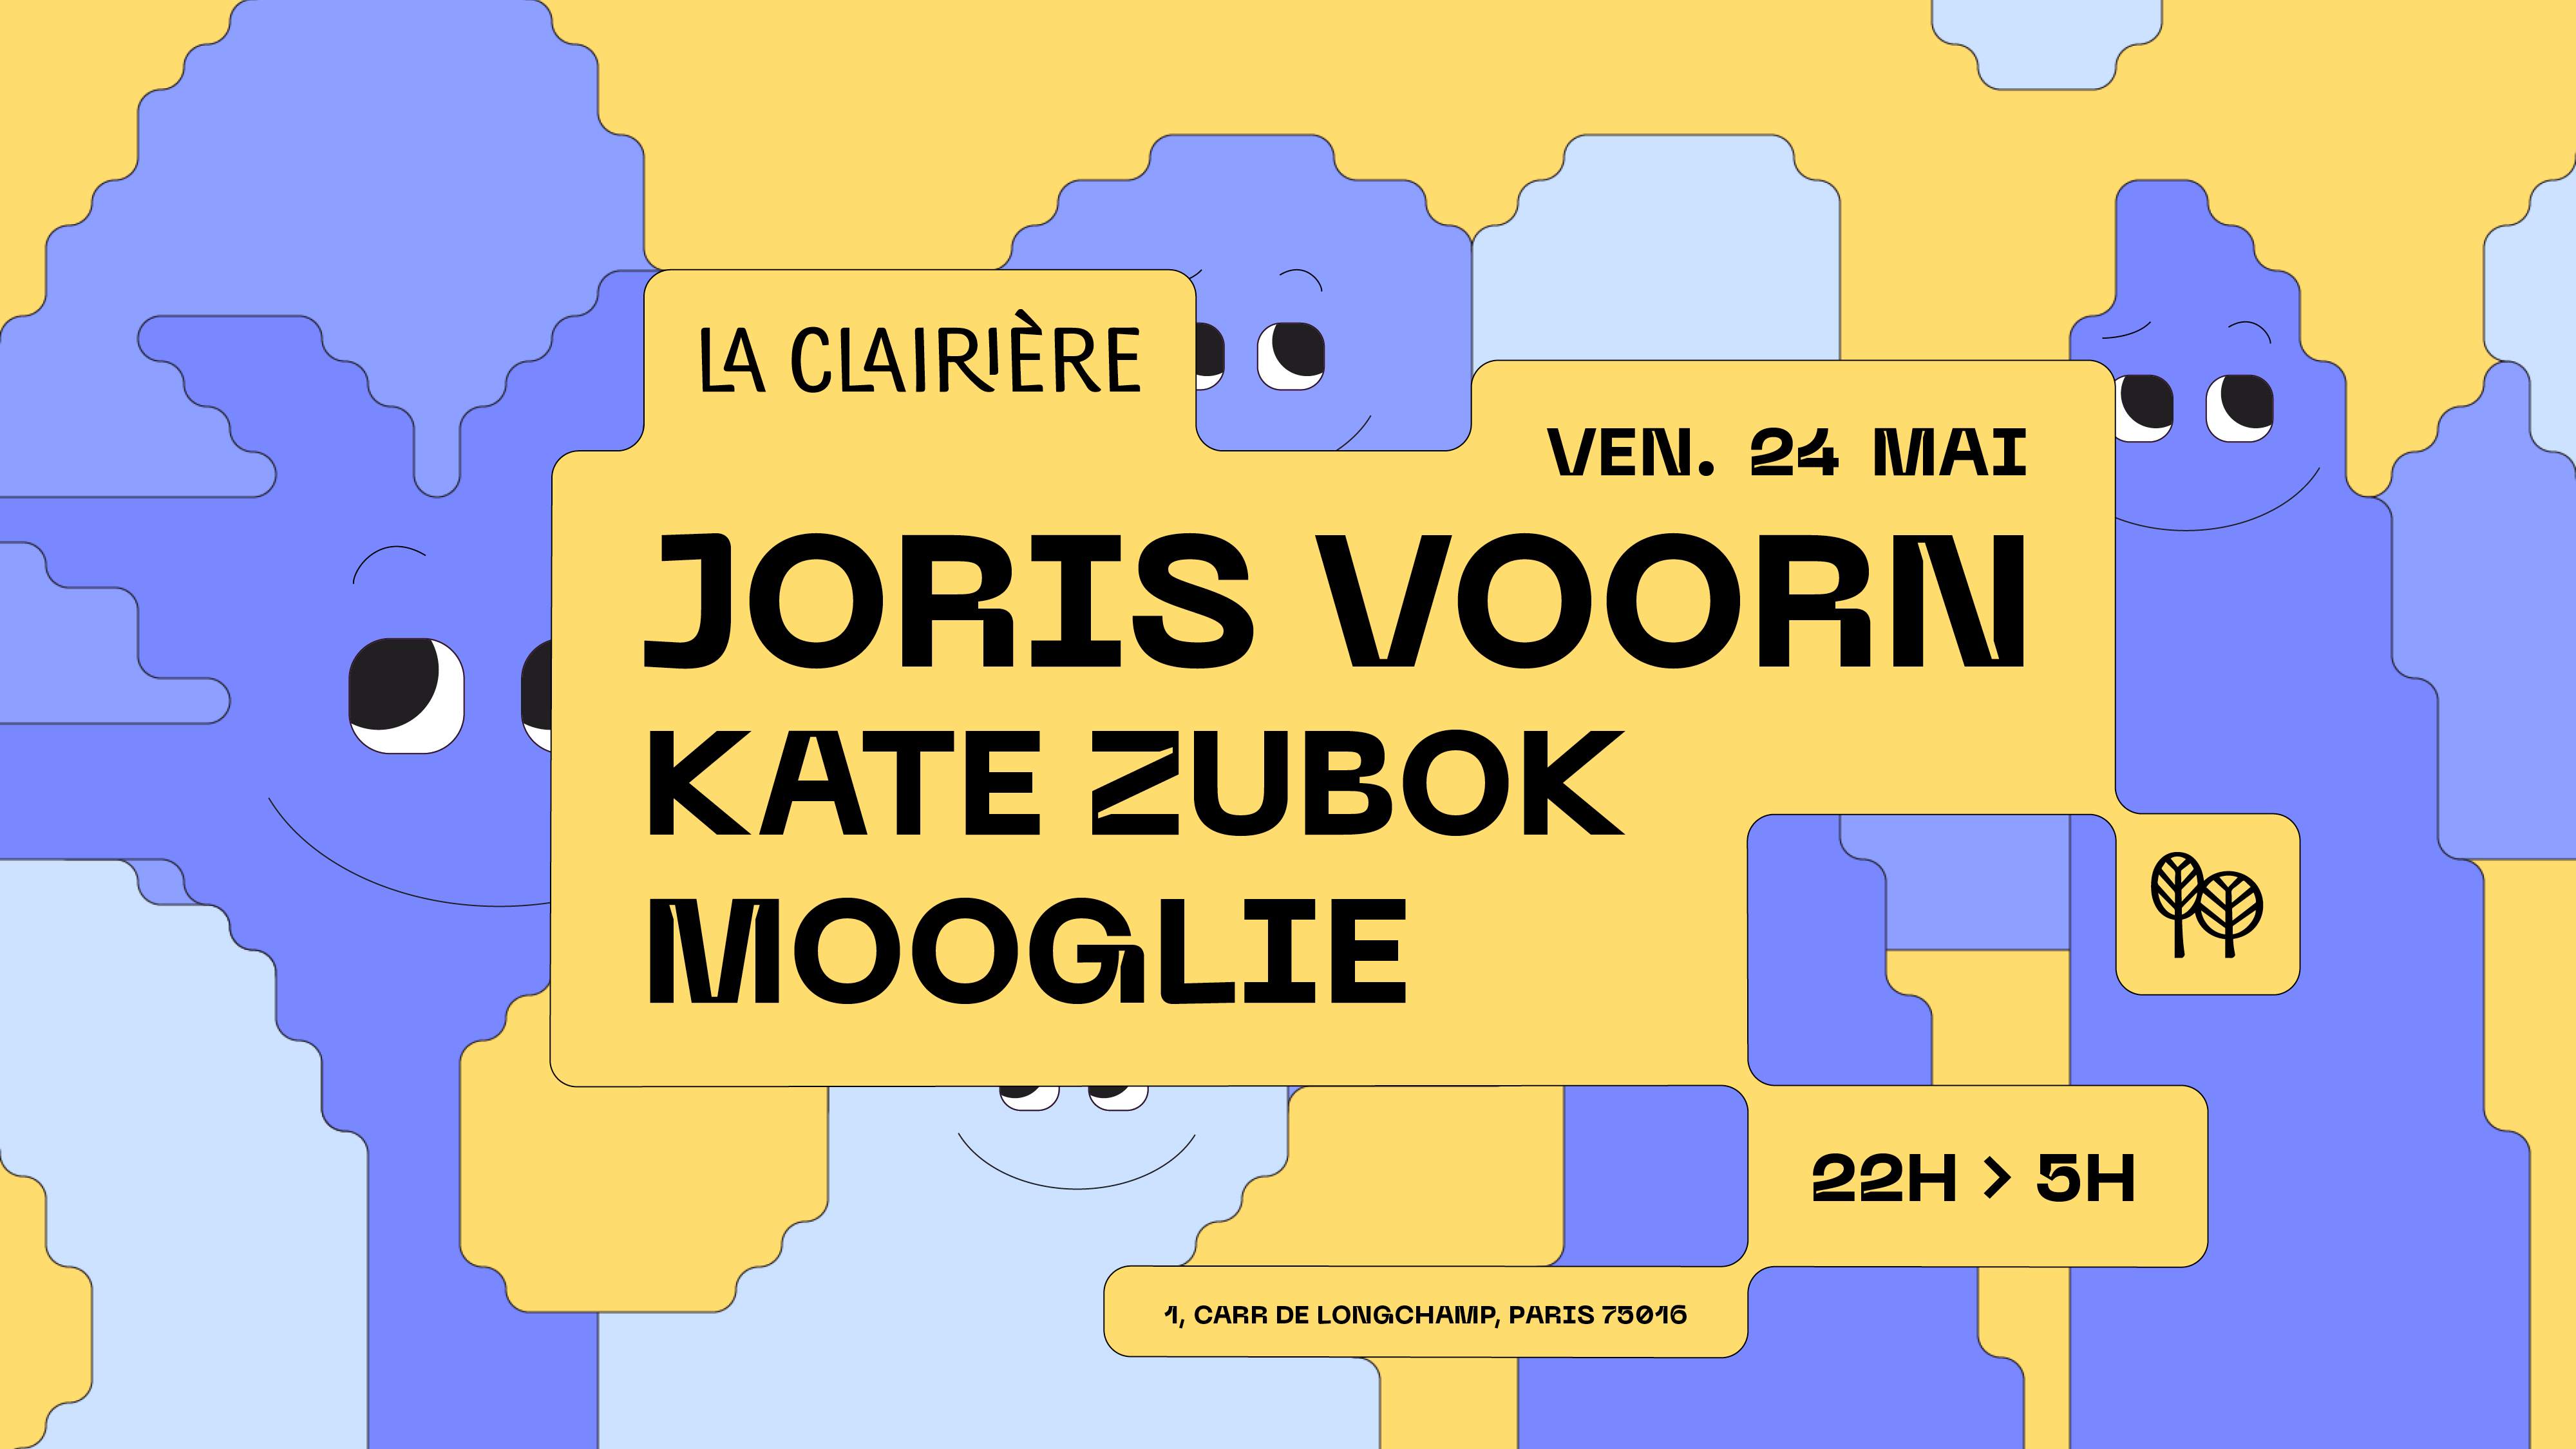 La Clairière: Joris Voorn, Kate Zubok, Mooglie - Página frontal